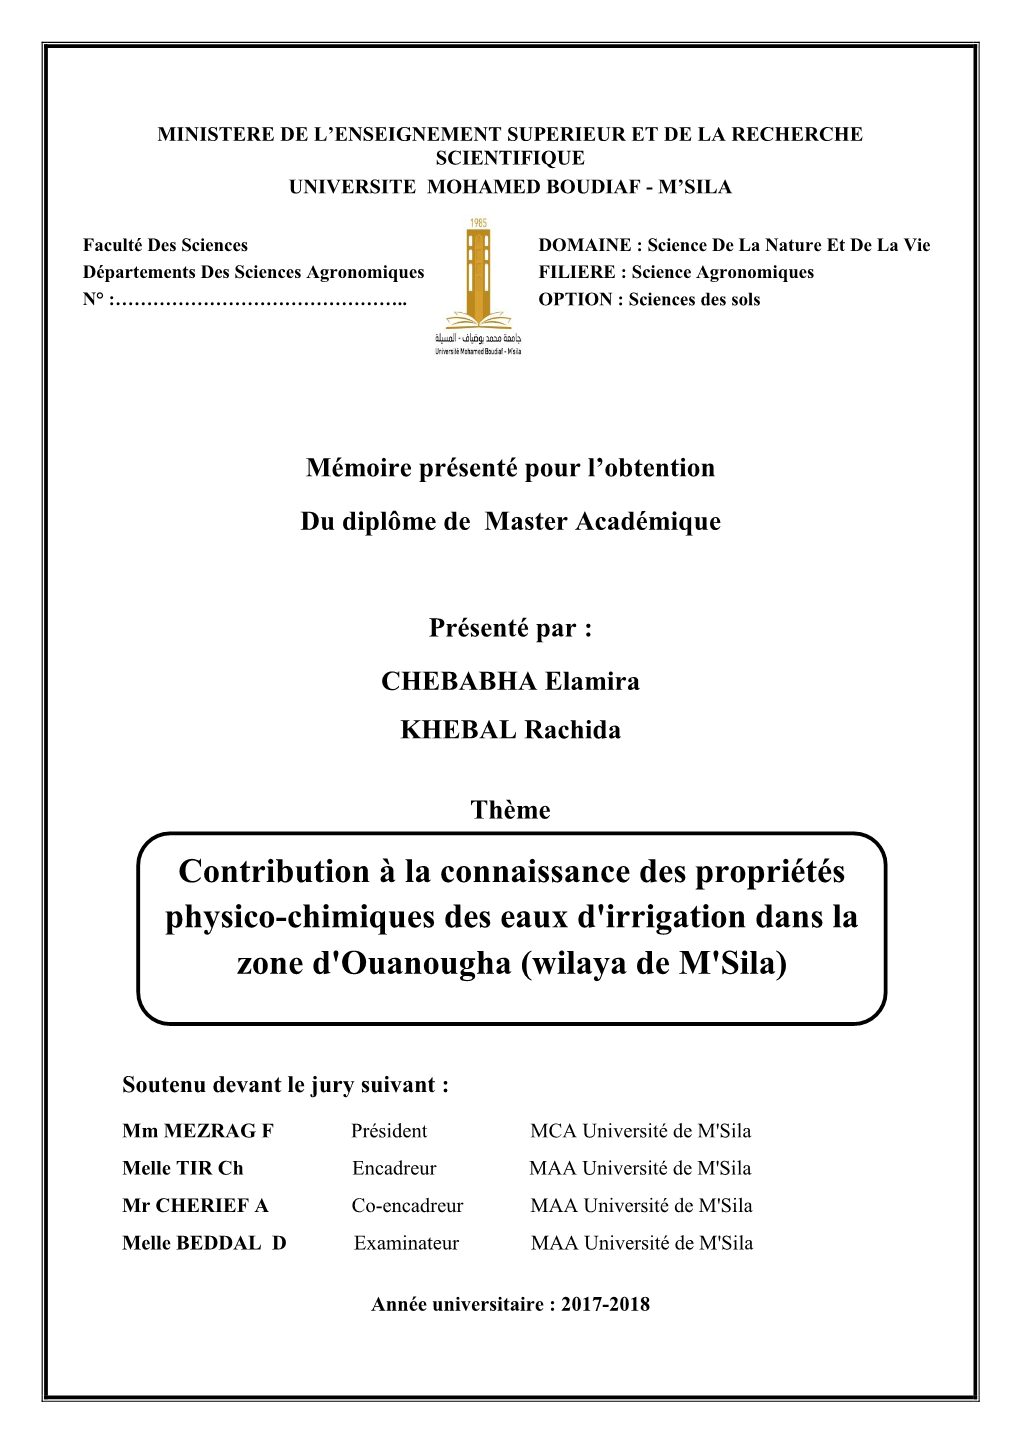 Contribution À La Connaissance Des Propriétés Physico-Chimiques Des Eaux D'irrigation Dans La Zone D'ouanougha (Wilaya De M'sila)